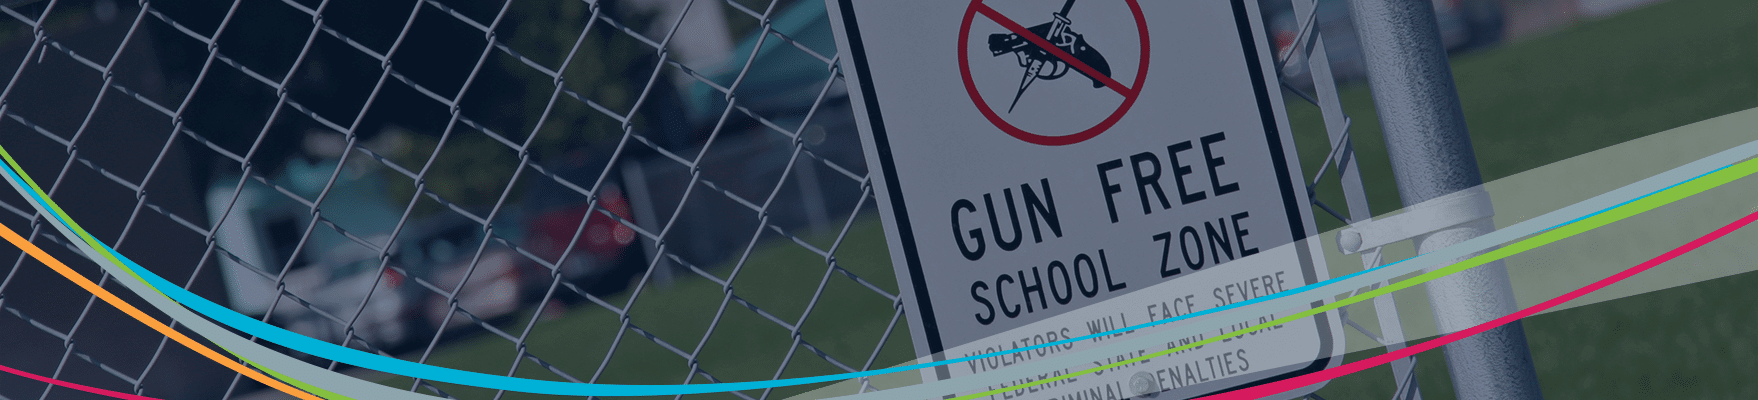 Señal de zona libre de armas en la valla Encabezado de prevención de violencia escolar